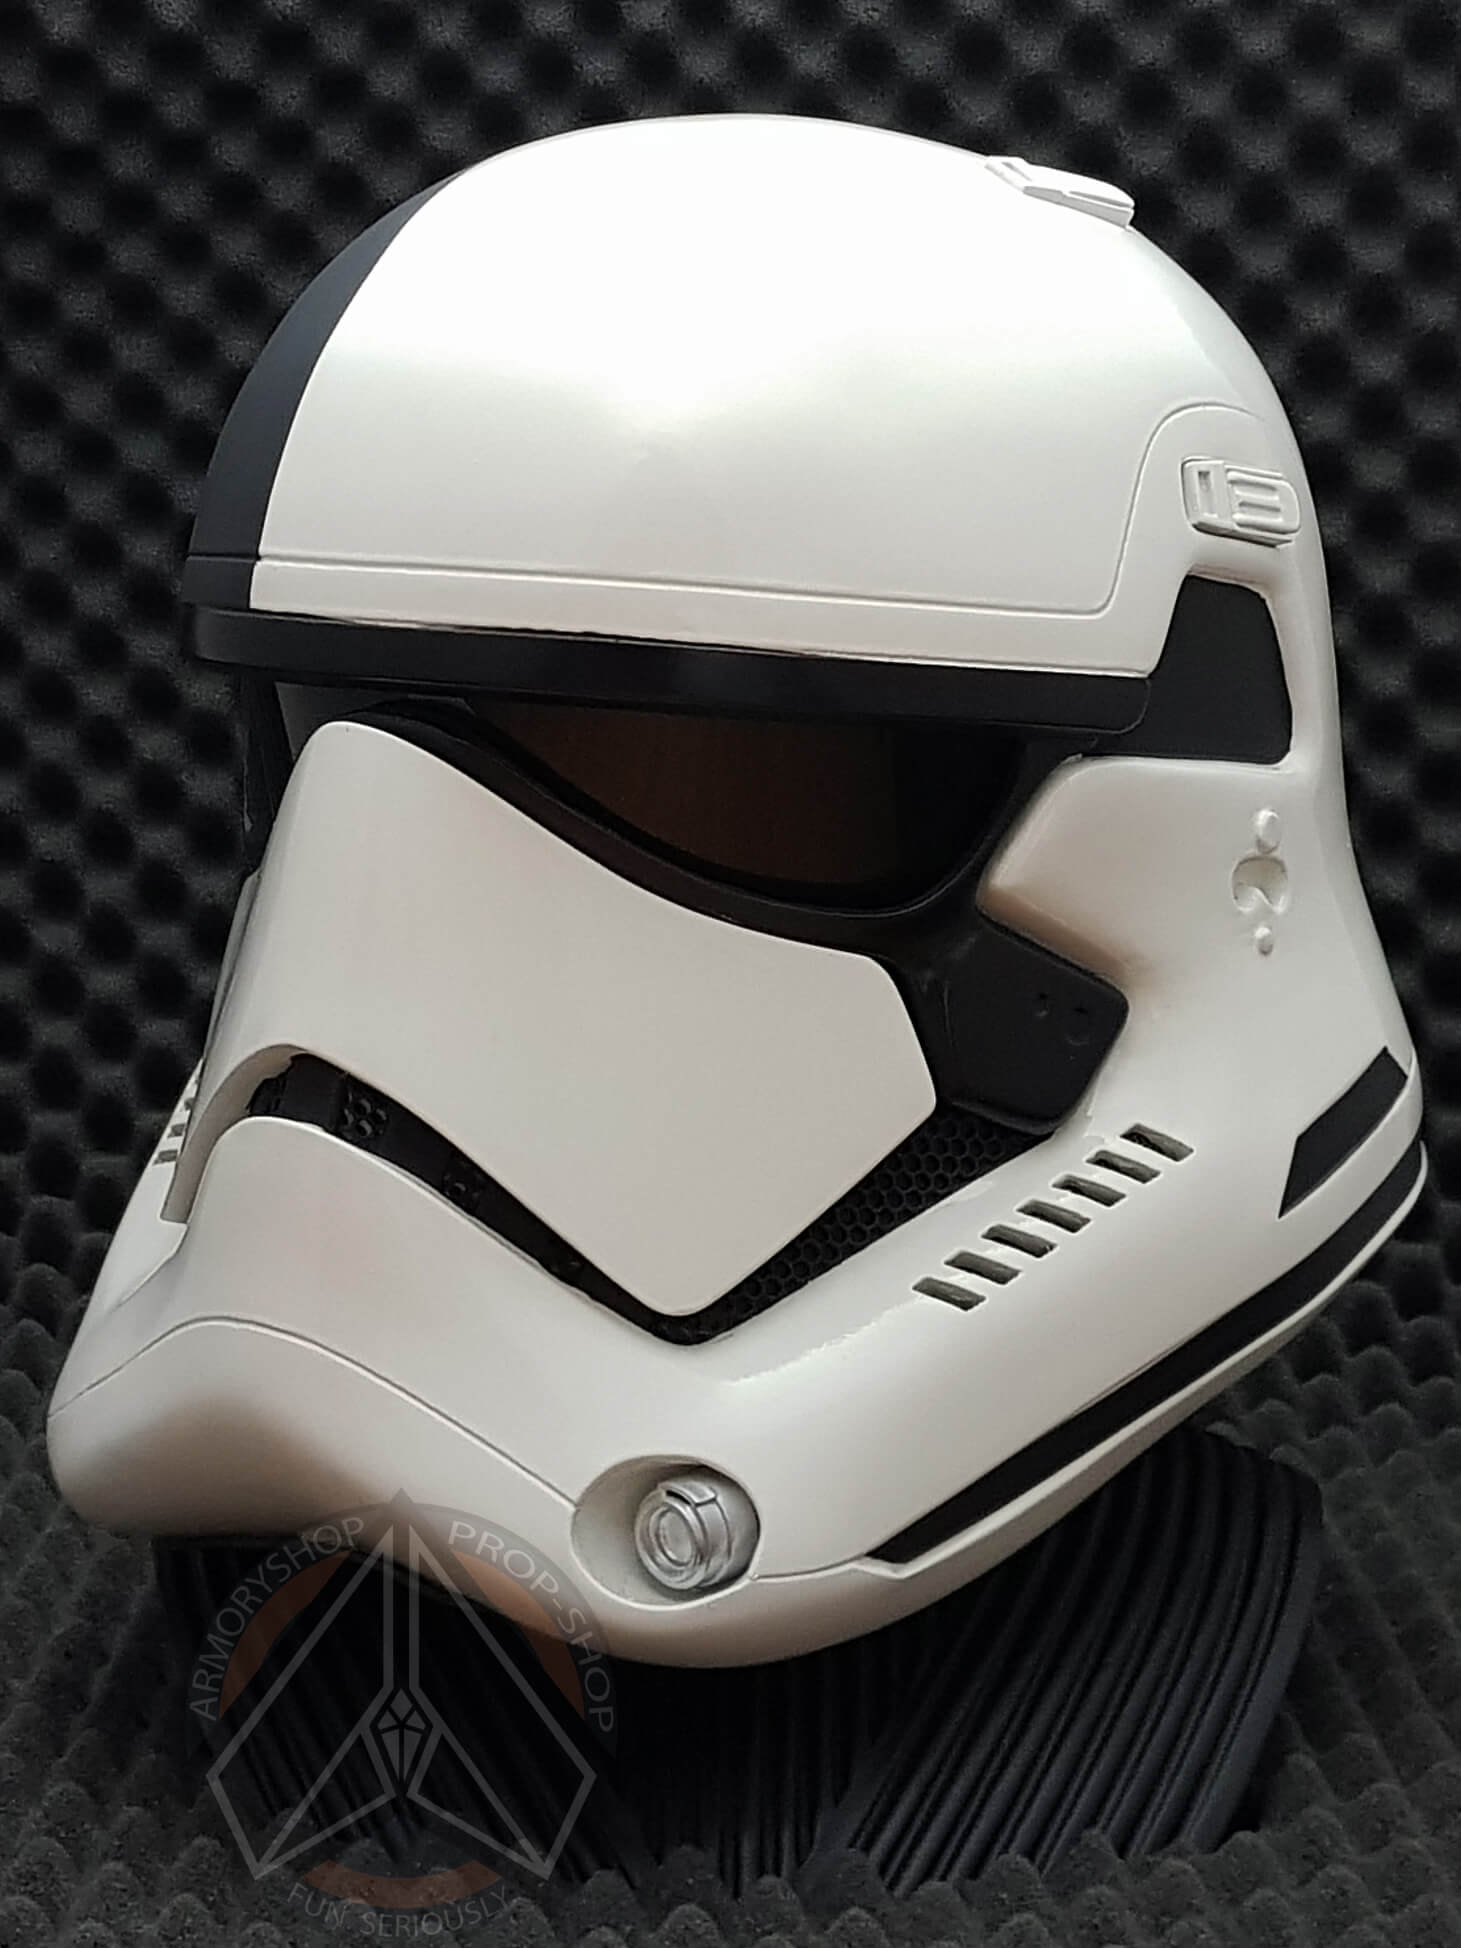 Star Wars StormTrooper Helmet 3-D GunMetal Enamel Necklace Licensed NEW UNUSED 